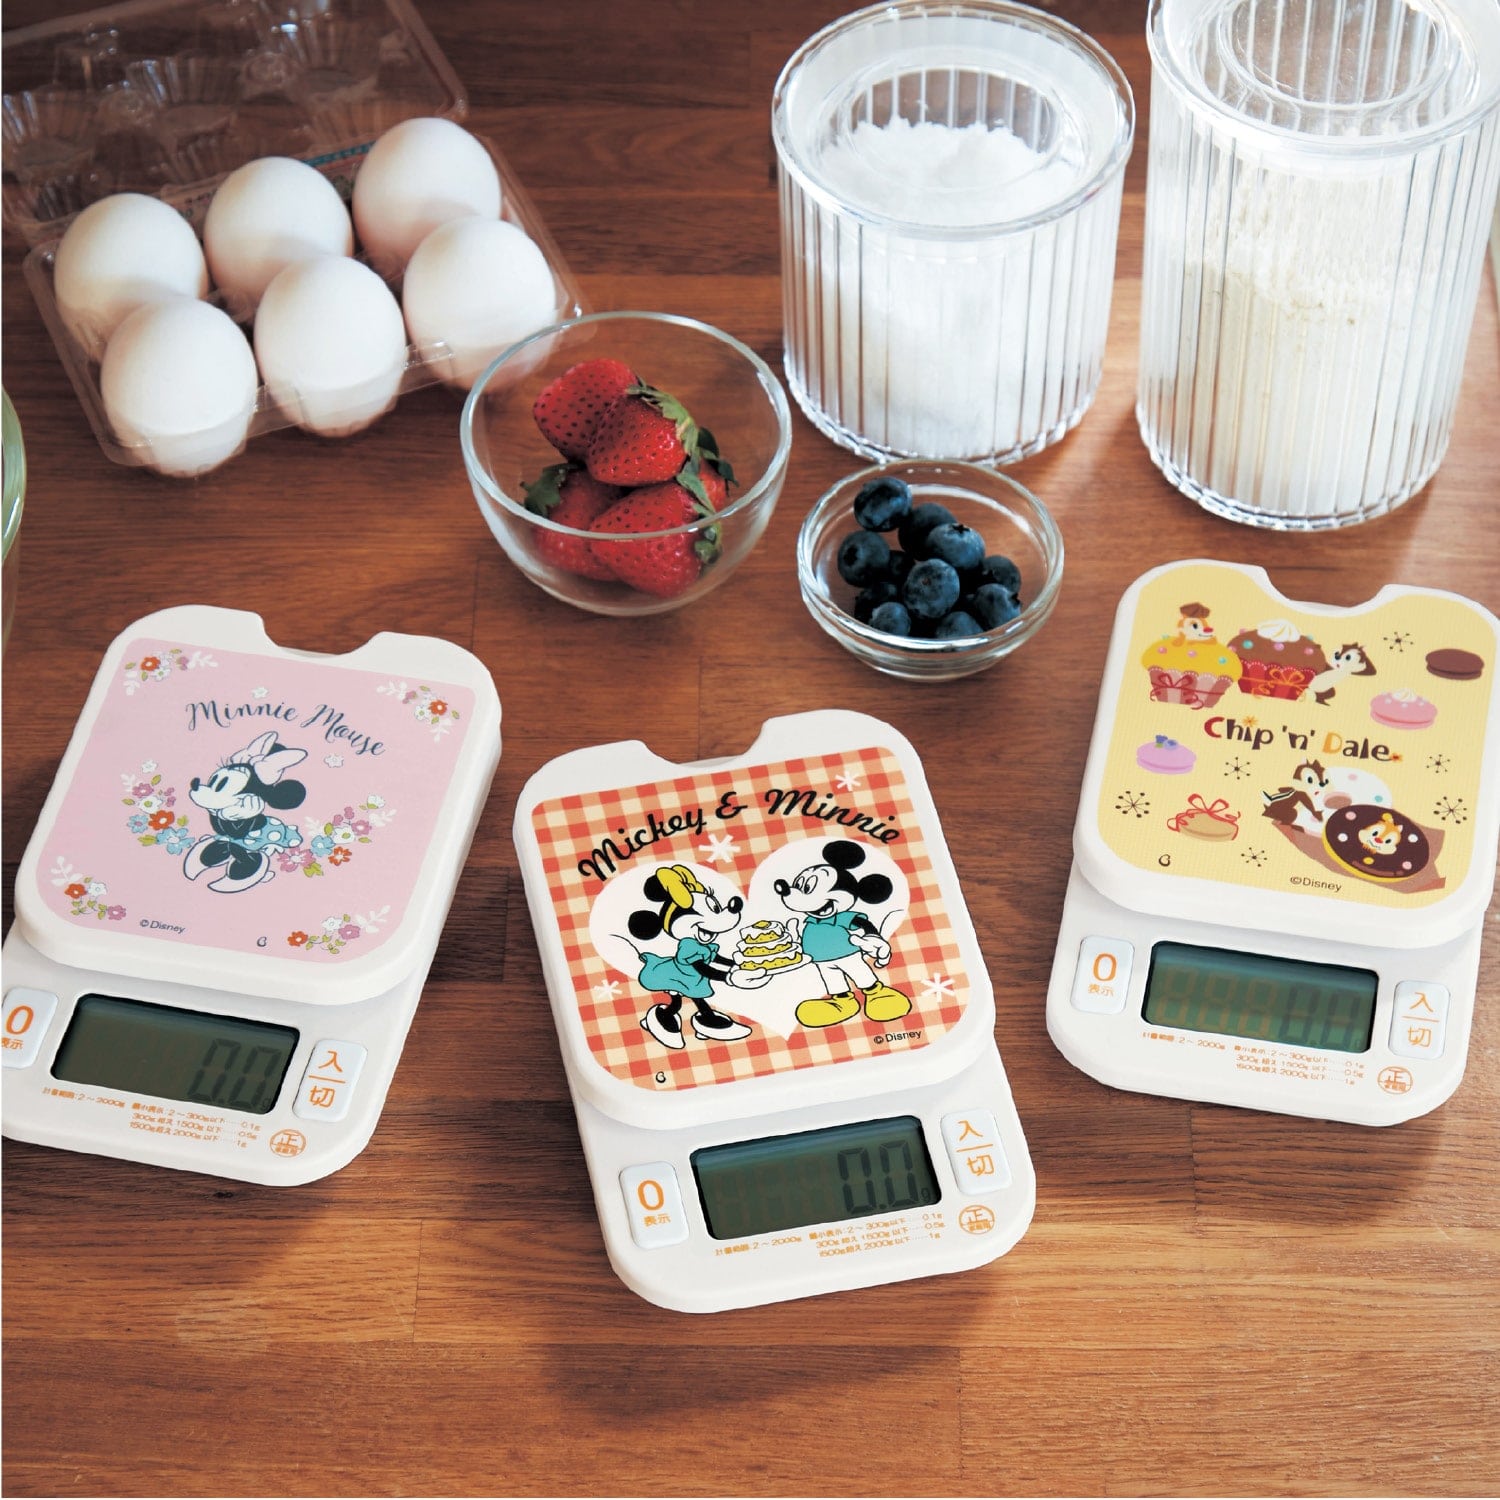 ベルメゾン ディズニー お菓子作りに便利な0.1g単位で測れるキッチンスケール(選べるキャラクター) ミニーマウス